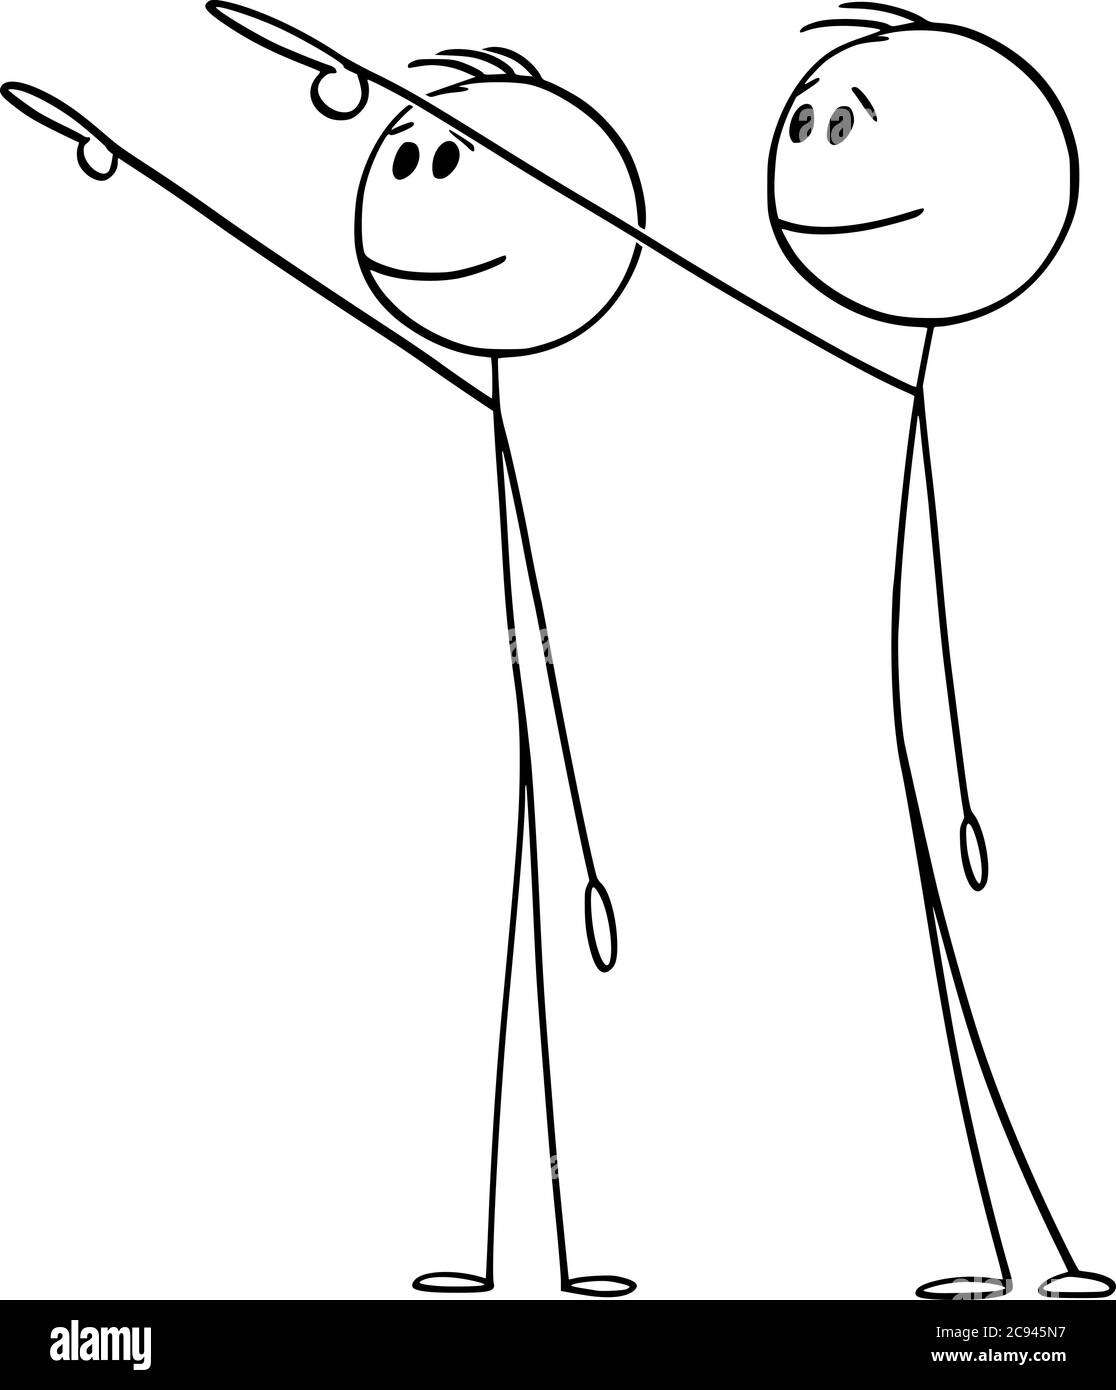 Dessin vectoriel de dessin de dessin de dessin de figure conceptuelle de deux hommes ou hommes d'affaires montrant, pointant ou présentant quelque chose de loin, de haut ou de haut au-dessus d'eux. Illustration de Vecteur